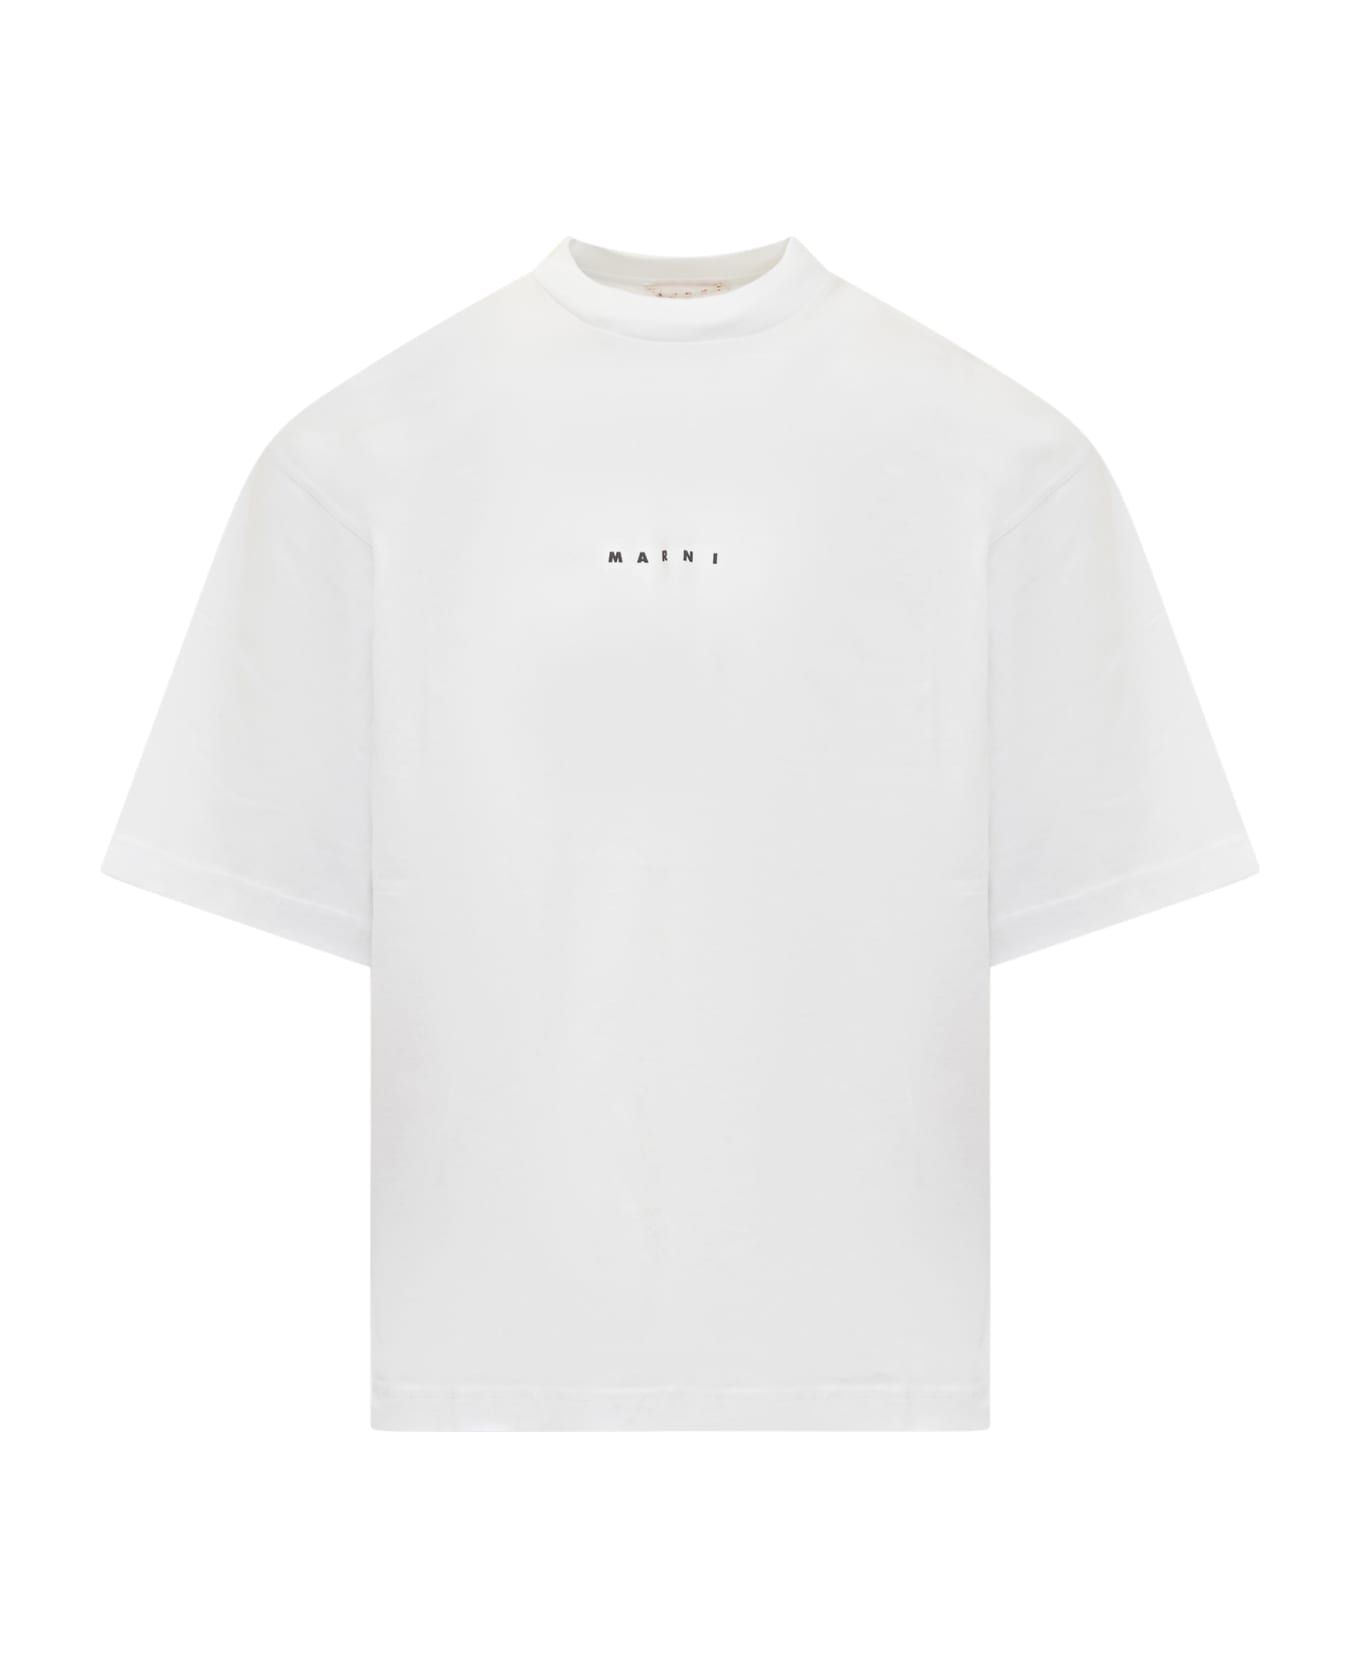 Marni T-shirt - LILY WHITE